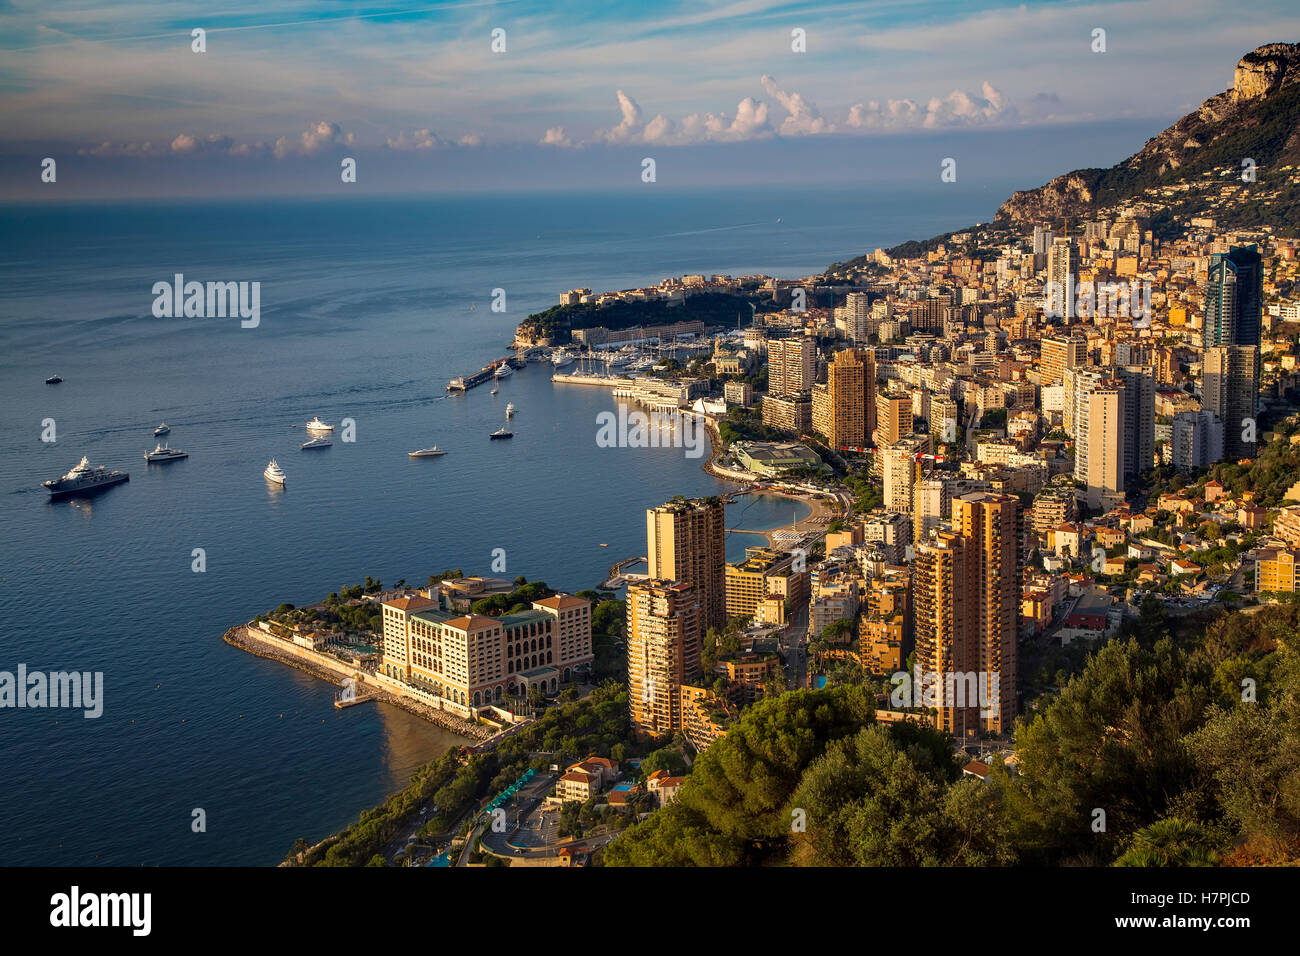 Principality of Monaco. Monte Carlo. French Riviera, Cote d'Azur. Mediterranean Sea, Europe Stock Photo